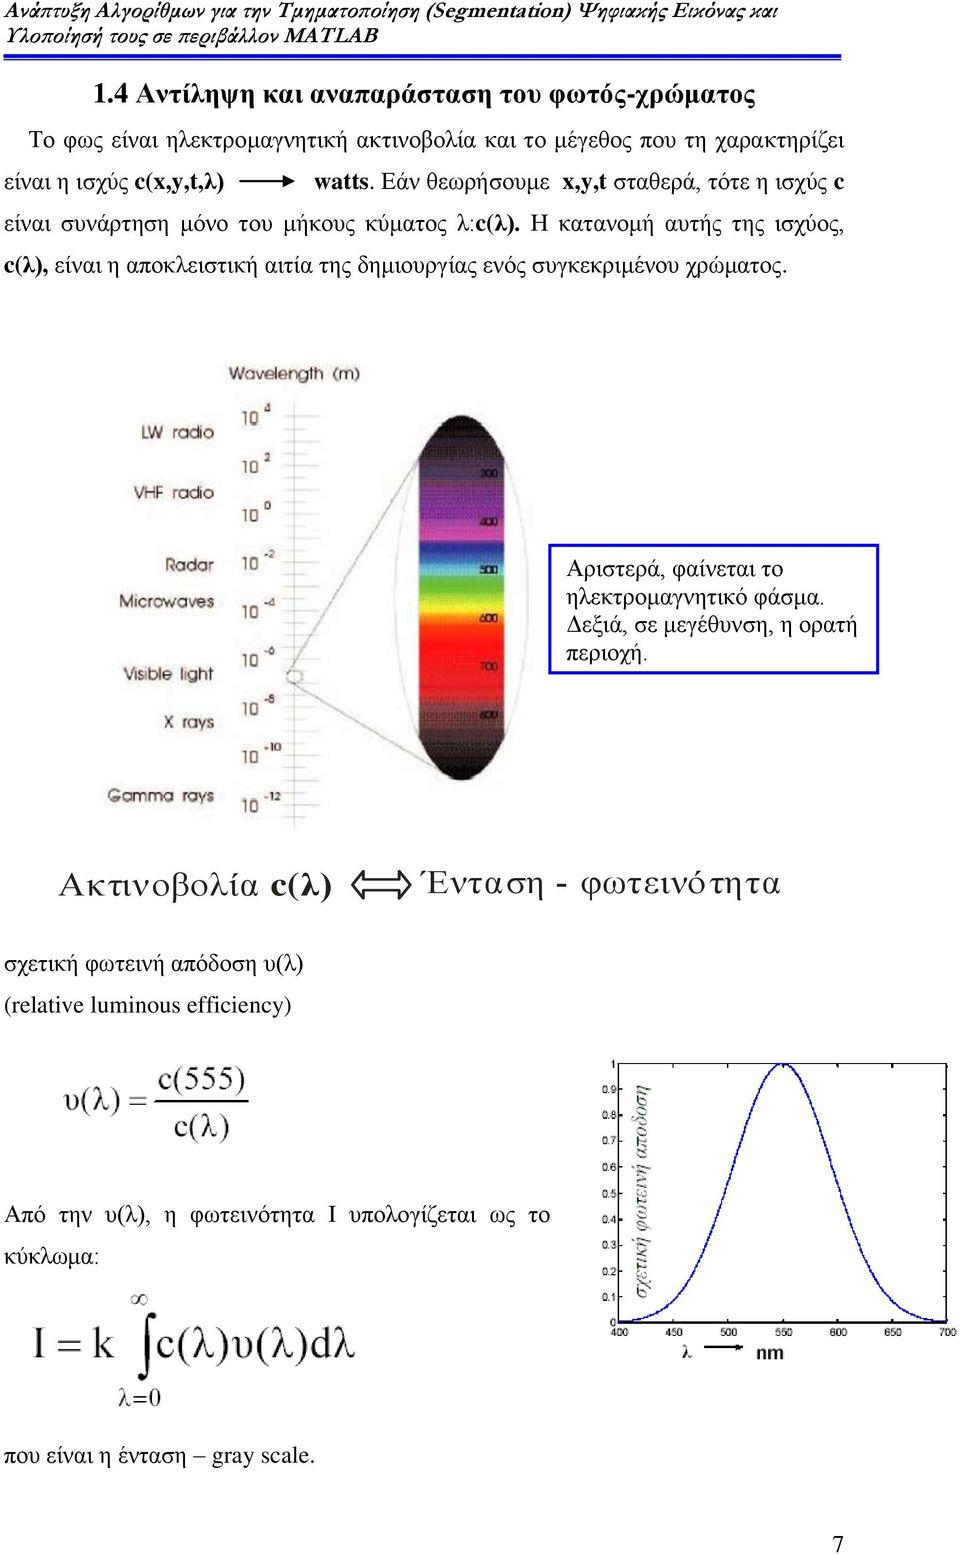 Η κατανομή αυτής της ισχύος, c(λ), είναι η αποκλειστική αιτία της δημιουργίας ενός συγκεκριμένου χρώματος. Αριστερά, φαίνεται το ηλεκτρομαγνητικό φάσμα.